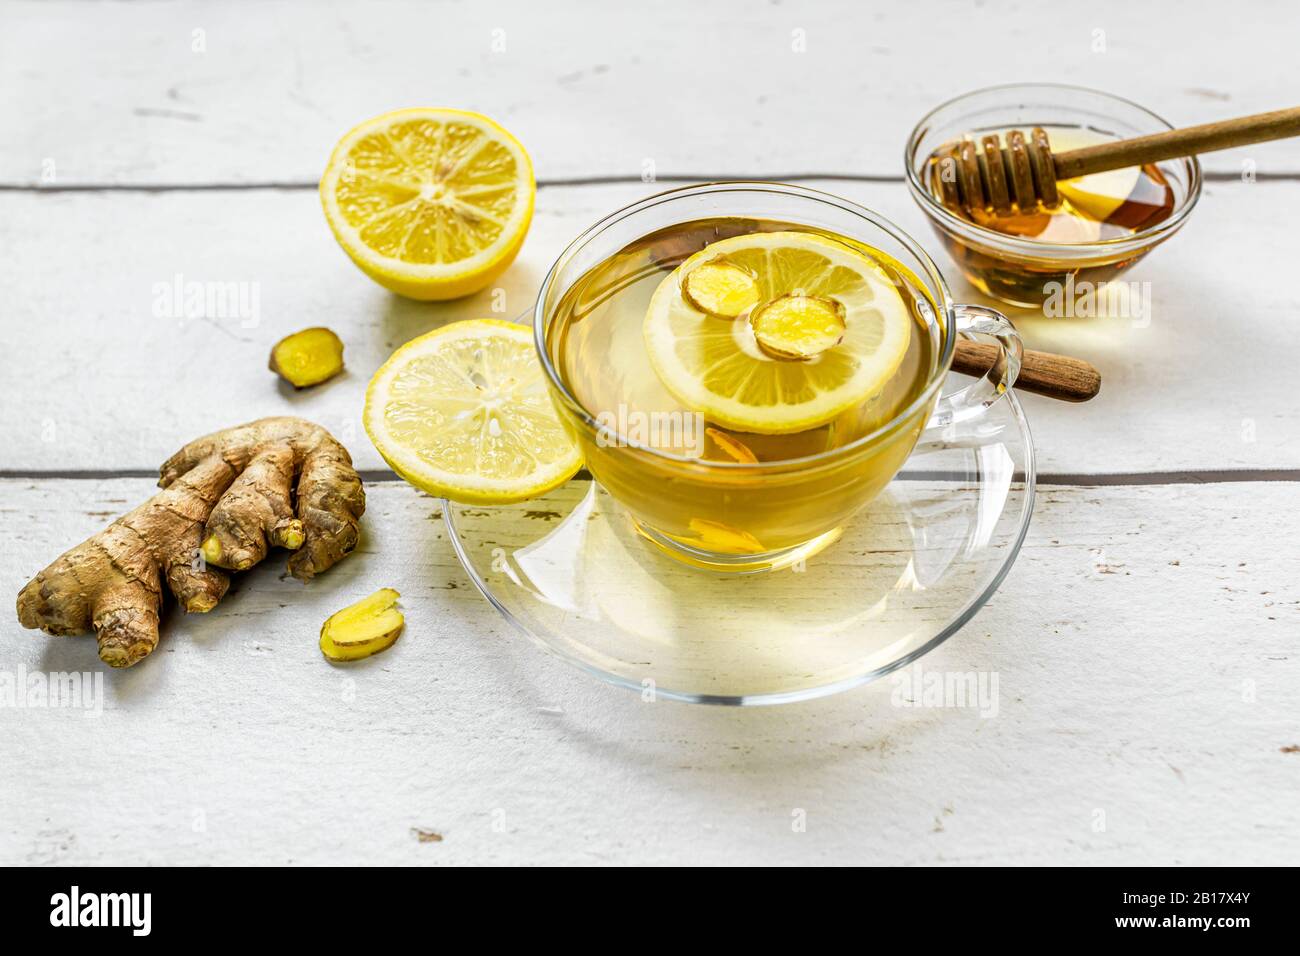 Estudio de té caliente con jengibre, limón y miel Foto de stock